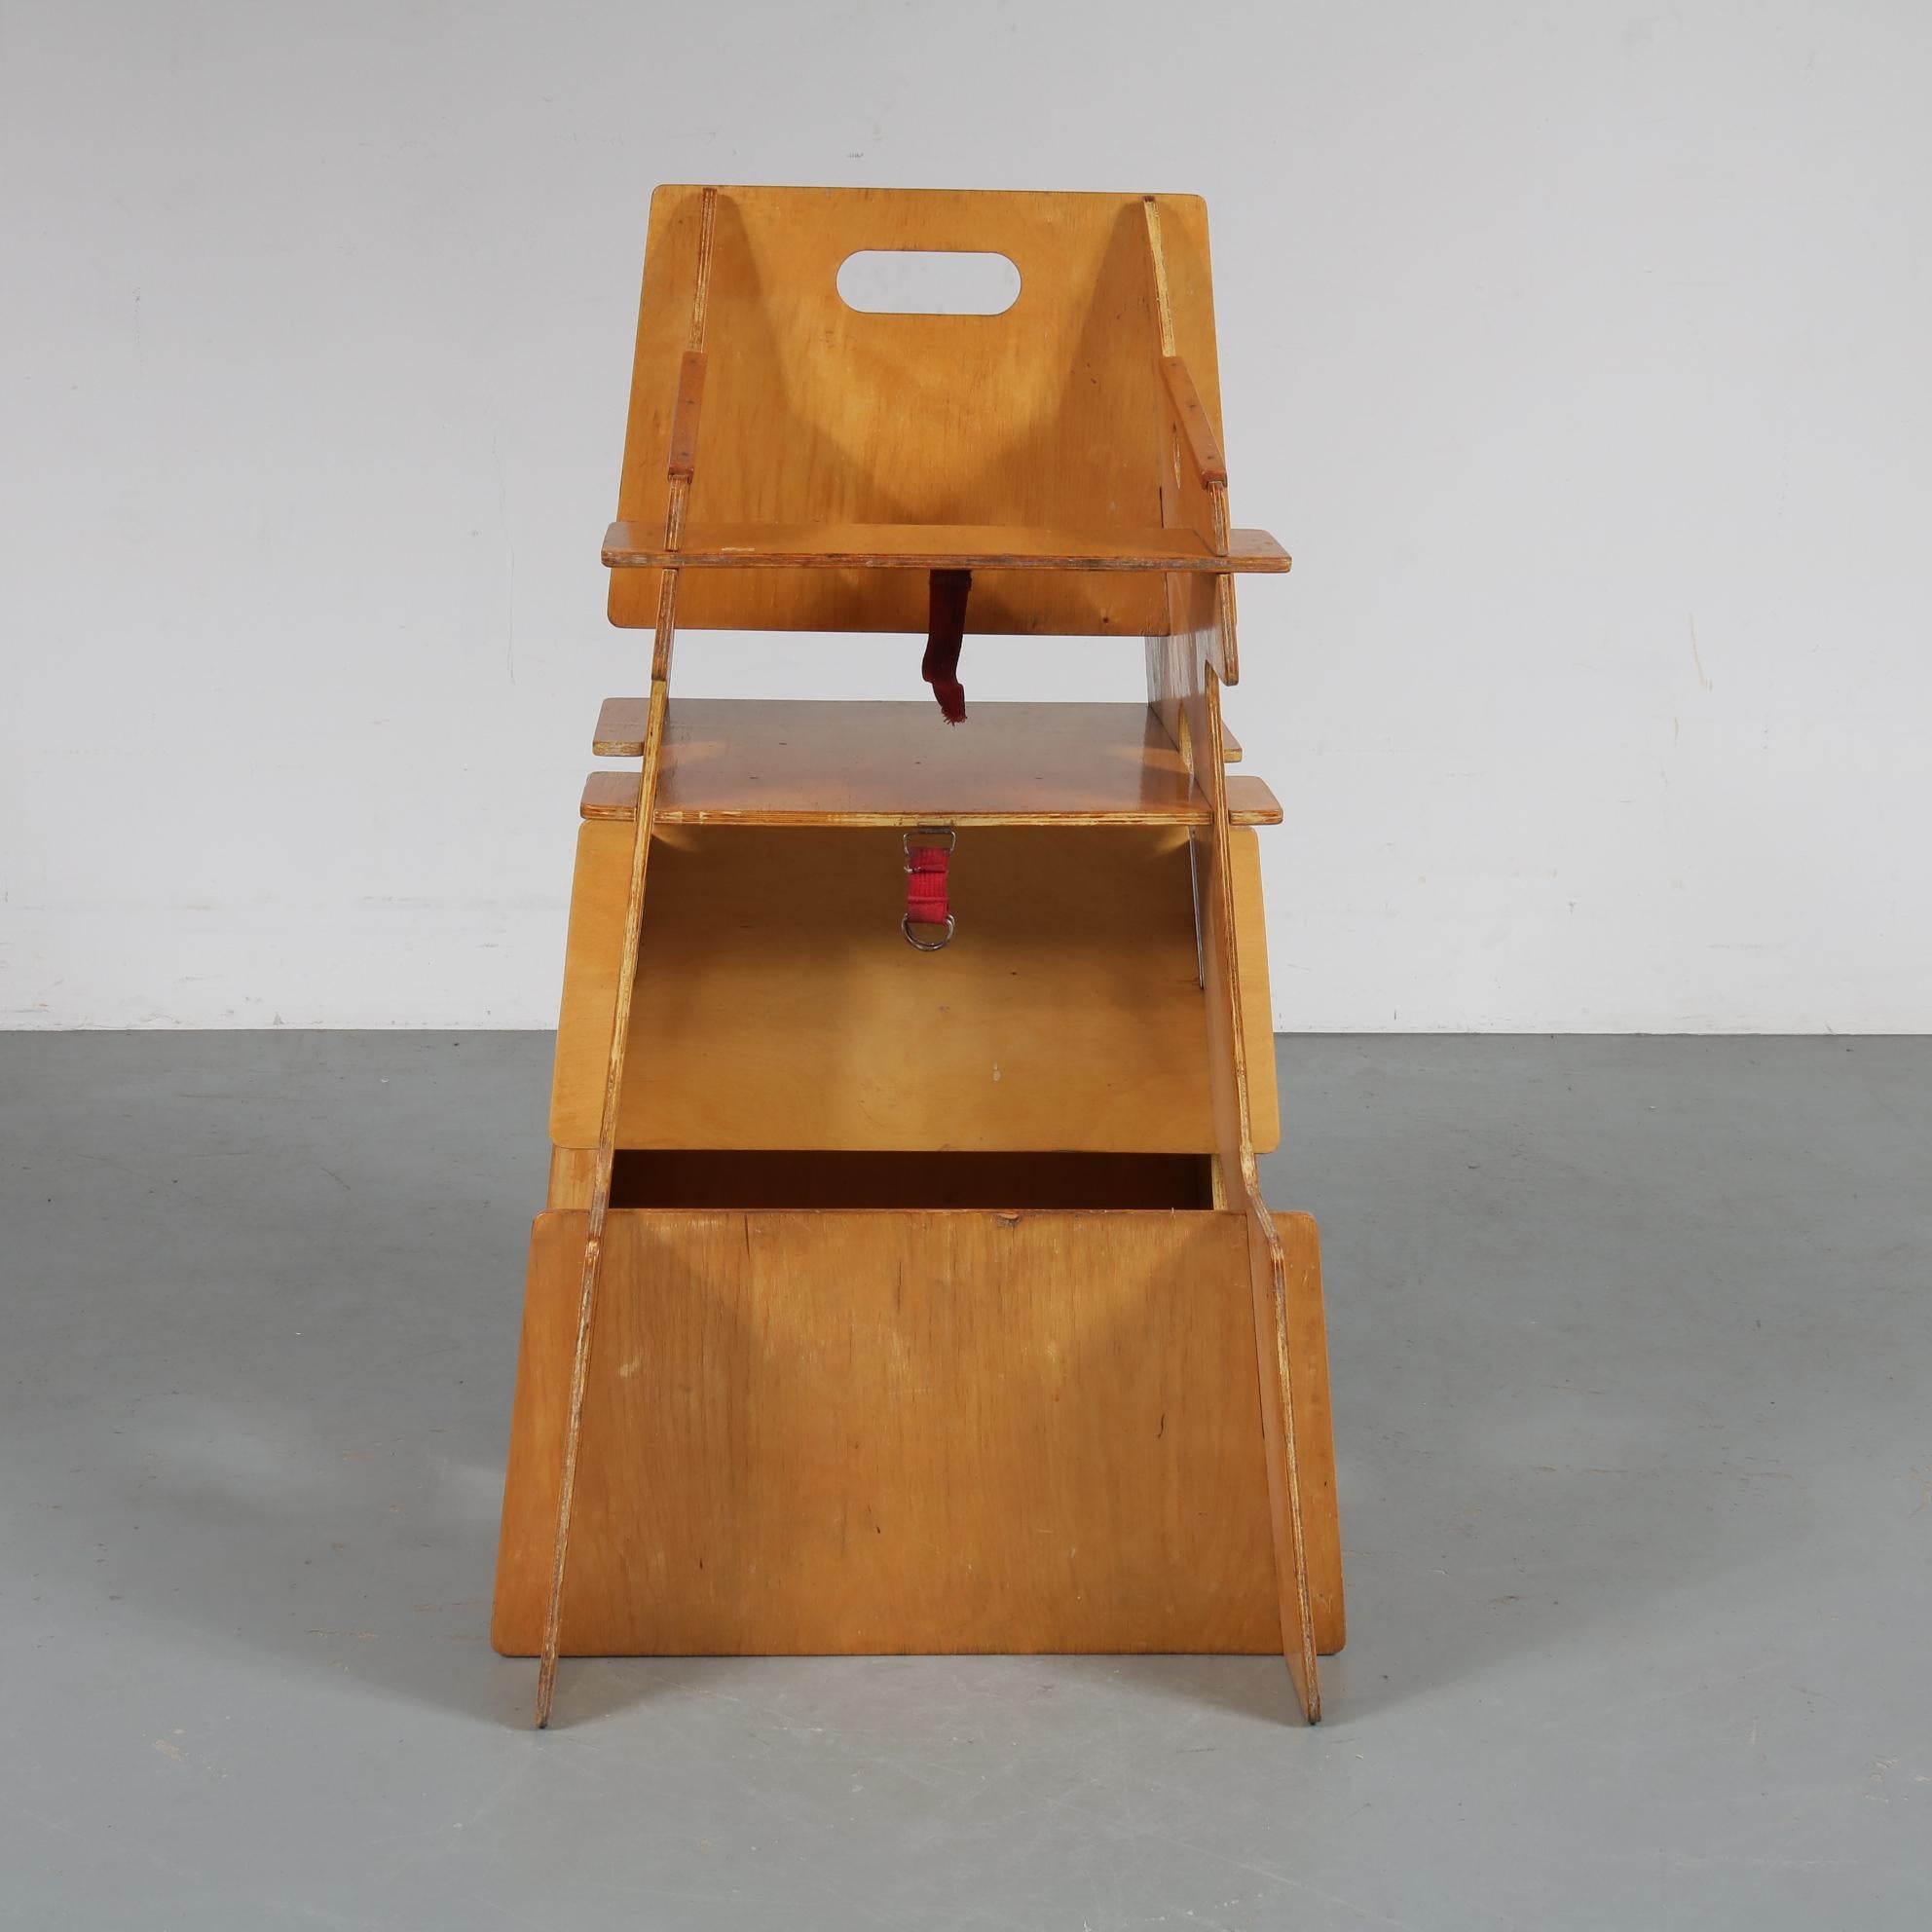 Dutch Convertible Children's High Chair, Desk and Rocker Combined, Netherlands, 1950